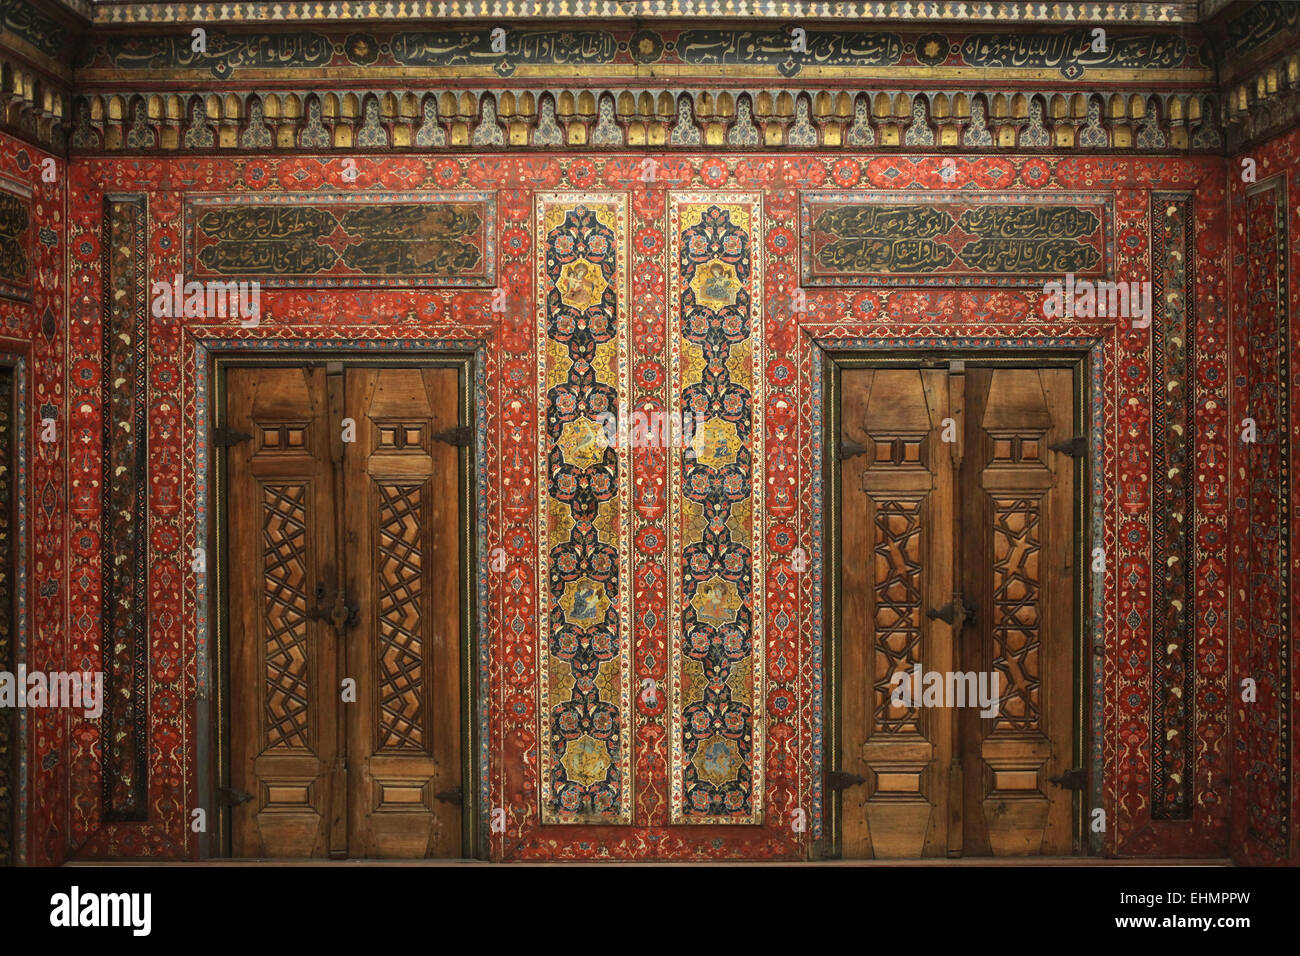 Aleppo-Zimmer. Wandverkleidung aus rund 1600 n. Chr., Ottoman-Reich. Pergamon Museum, Berlin, Deutschland. Stockfoto